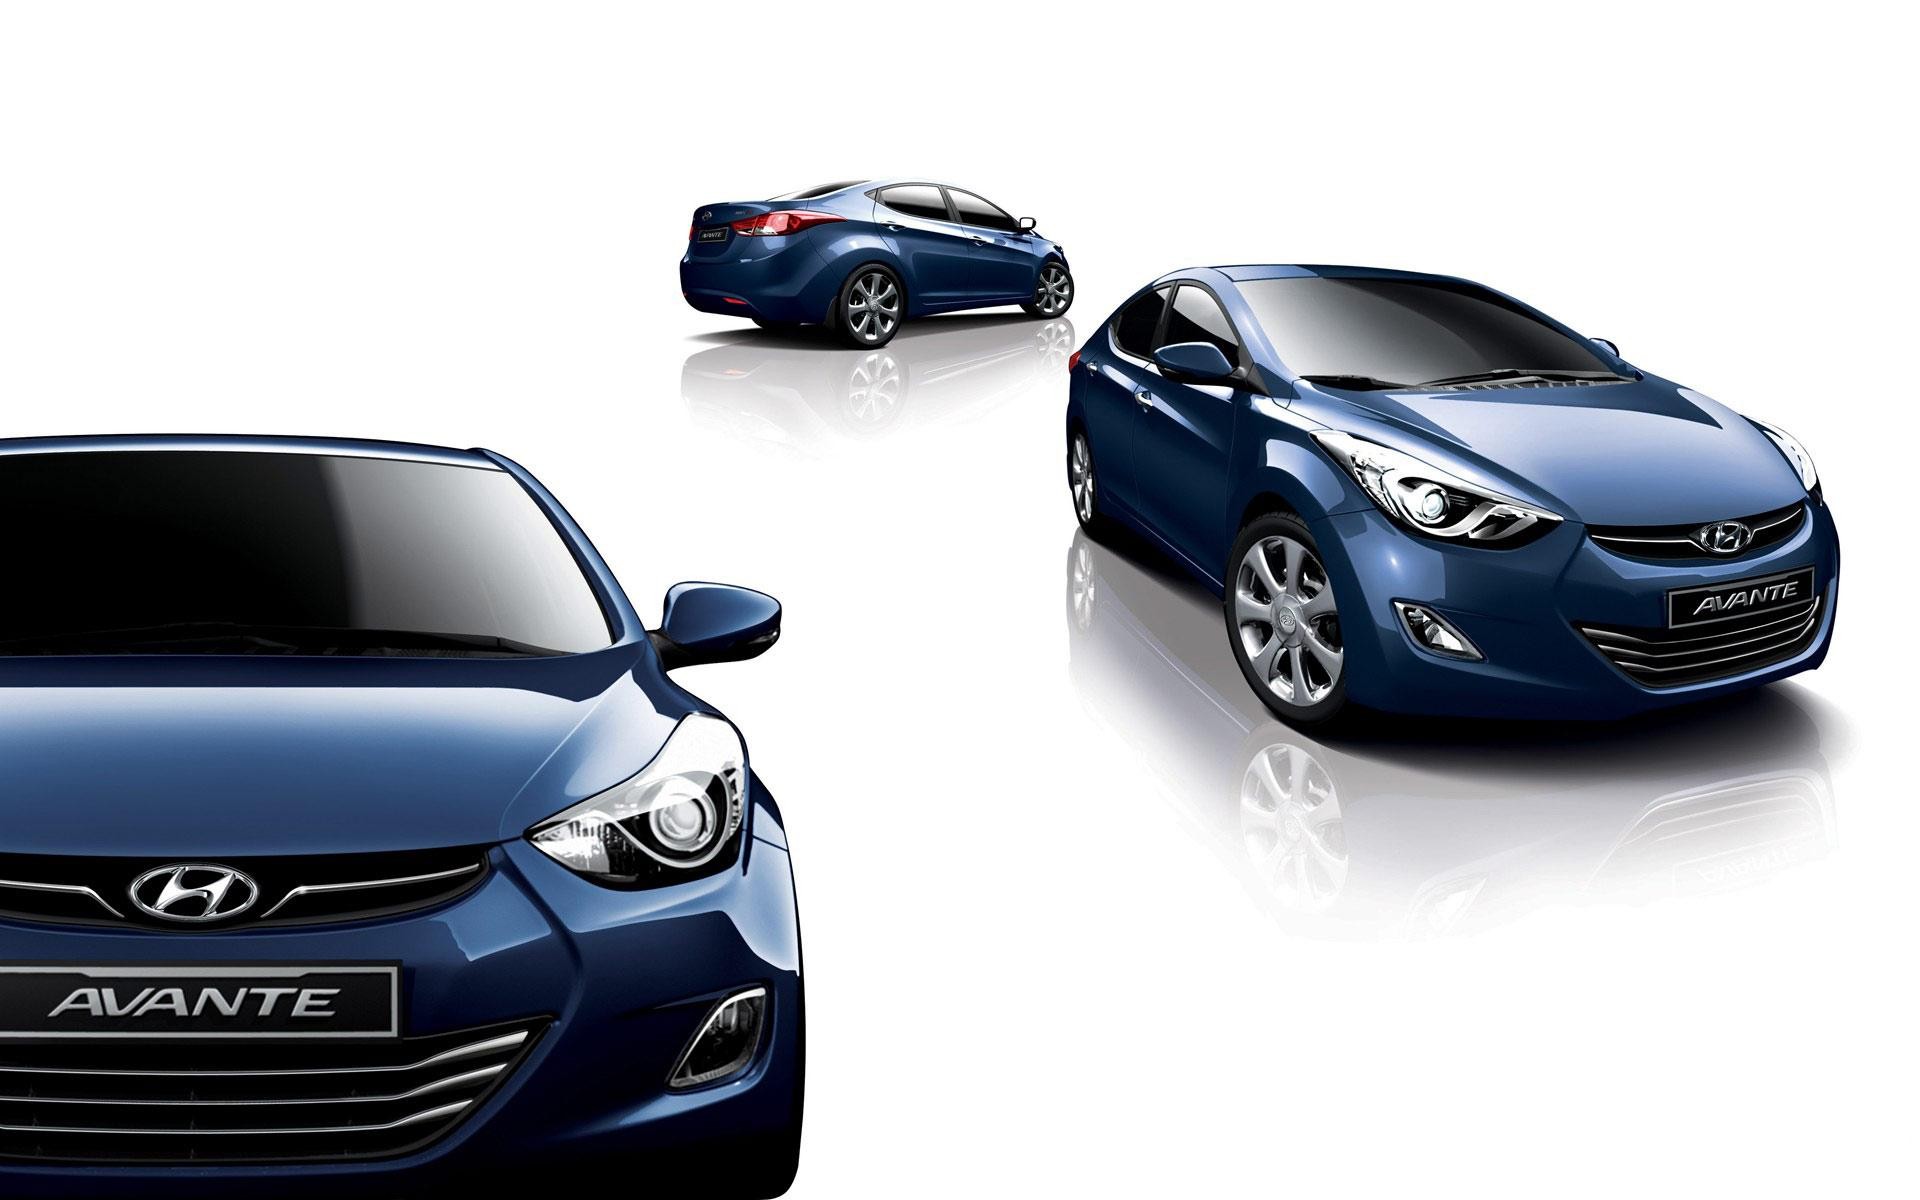 cars, vehicles, Hyundai Elantra, Hyundai Avante - desktop wallpaper